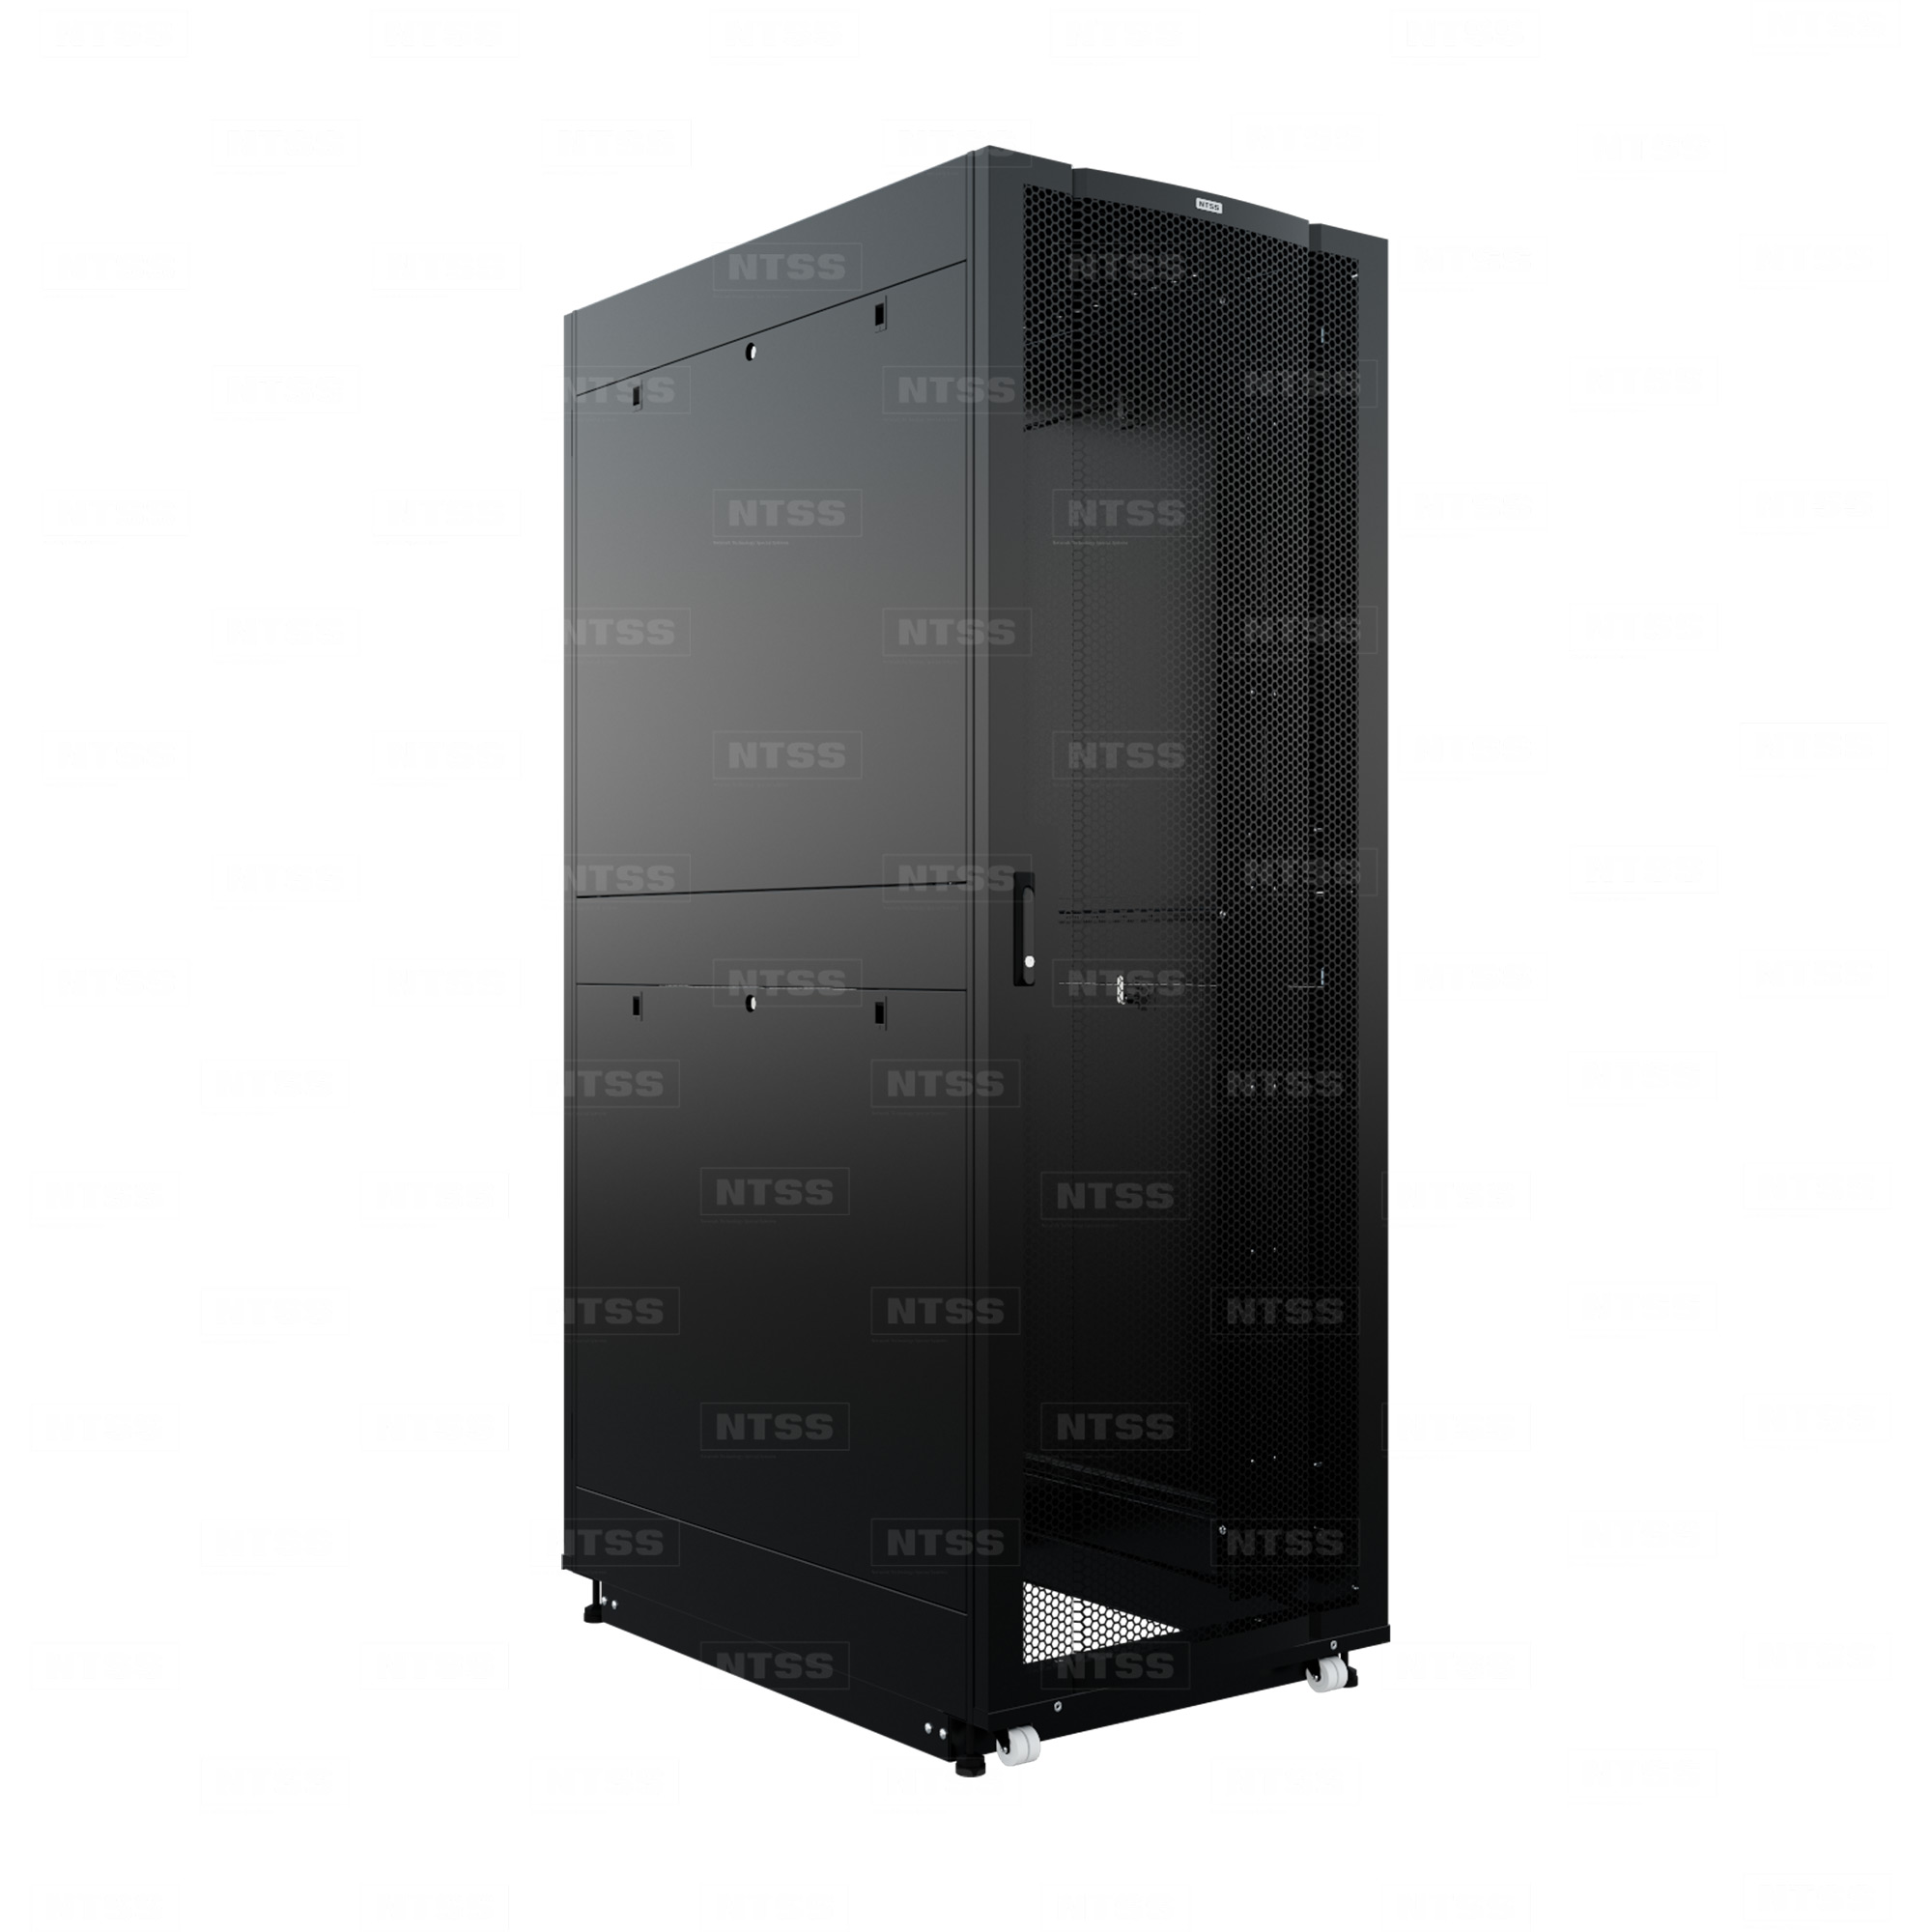 19" Напольный серверный шкаф NTSS ПРОЦОД PC 48U 800х1200 мм, передняя дверь перфорация, задняя дверь распашная двойная перфорированная, боковые стенки, регулируемые опоры, ролики, черный RAL 9005